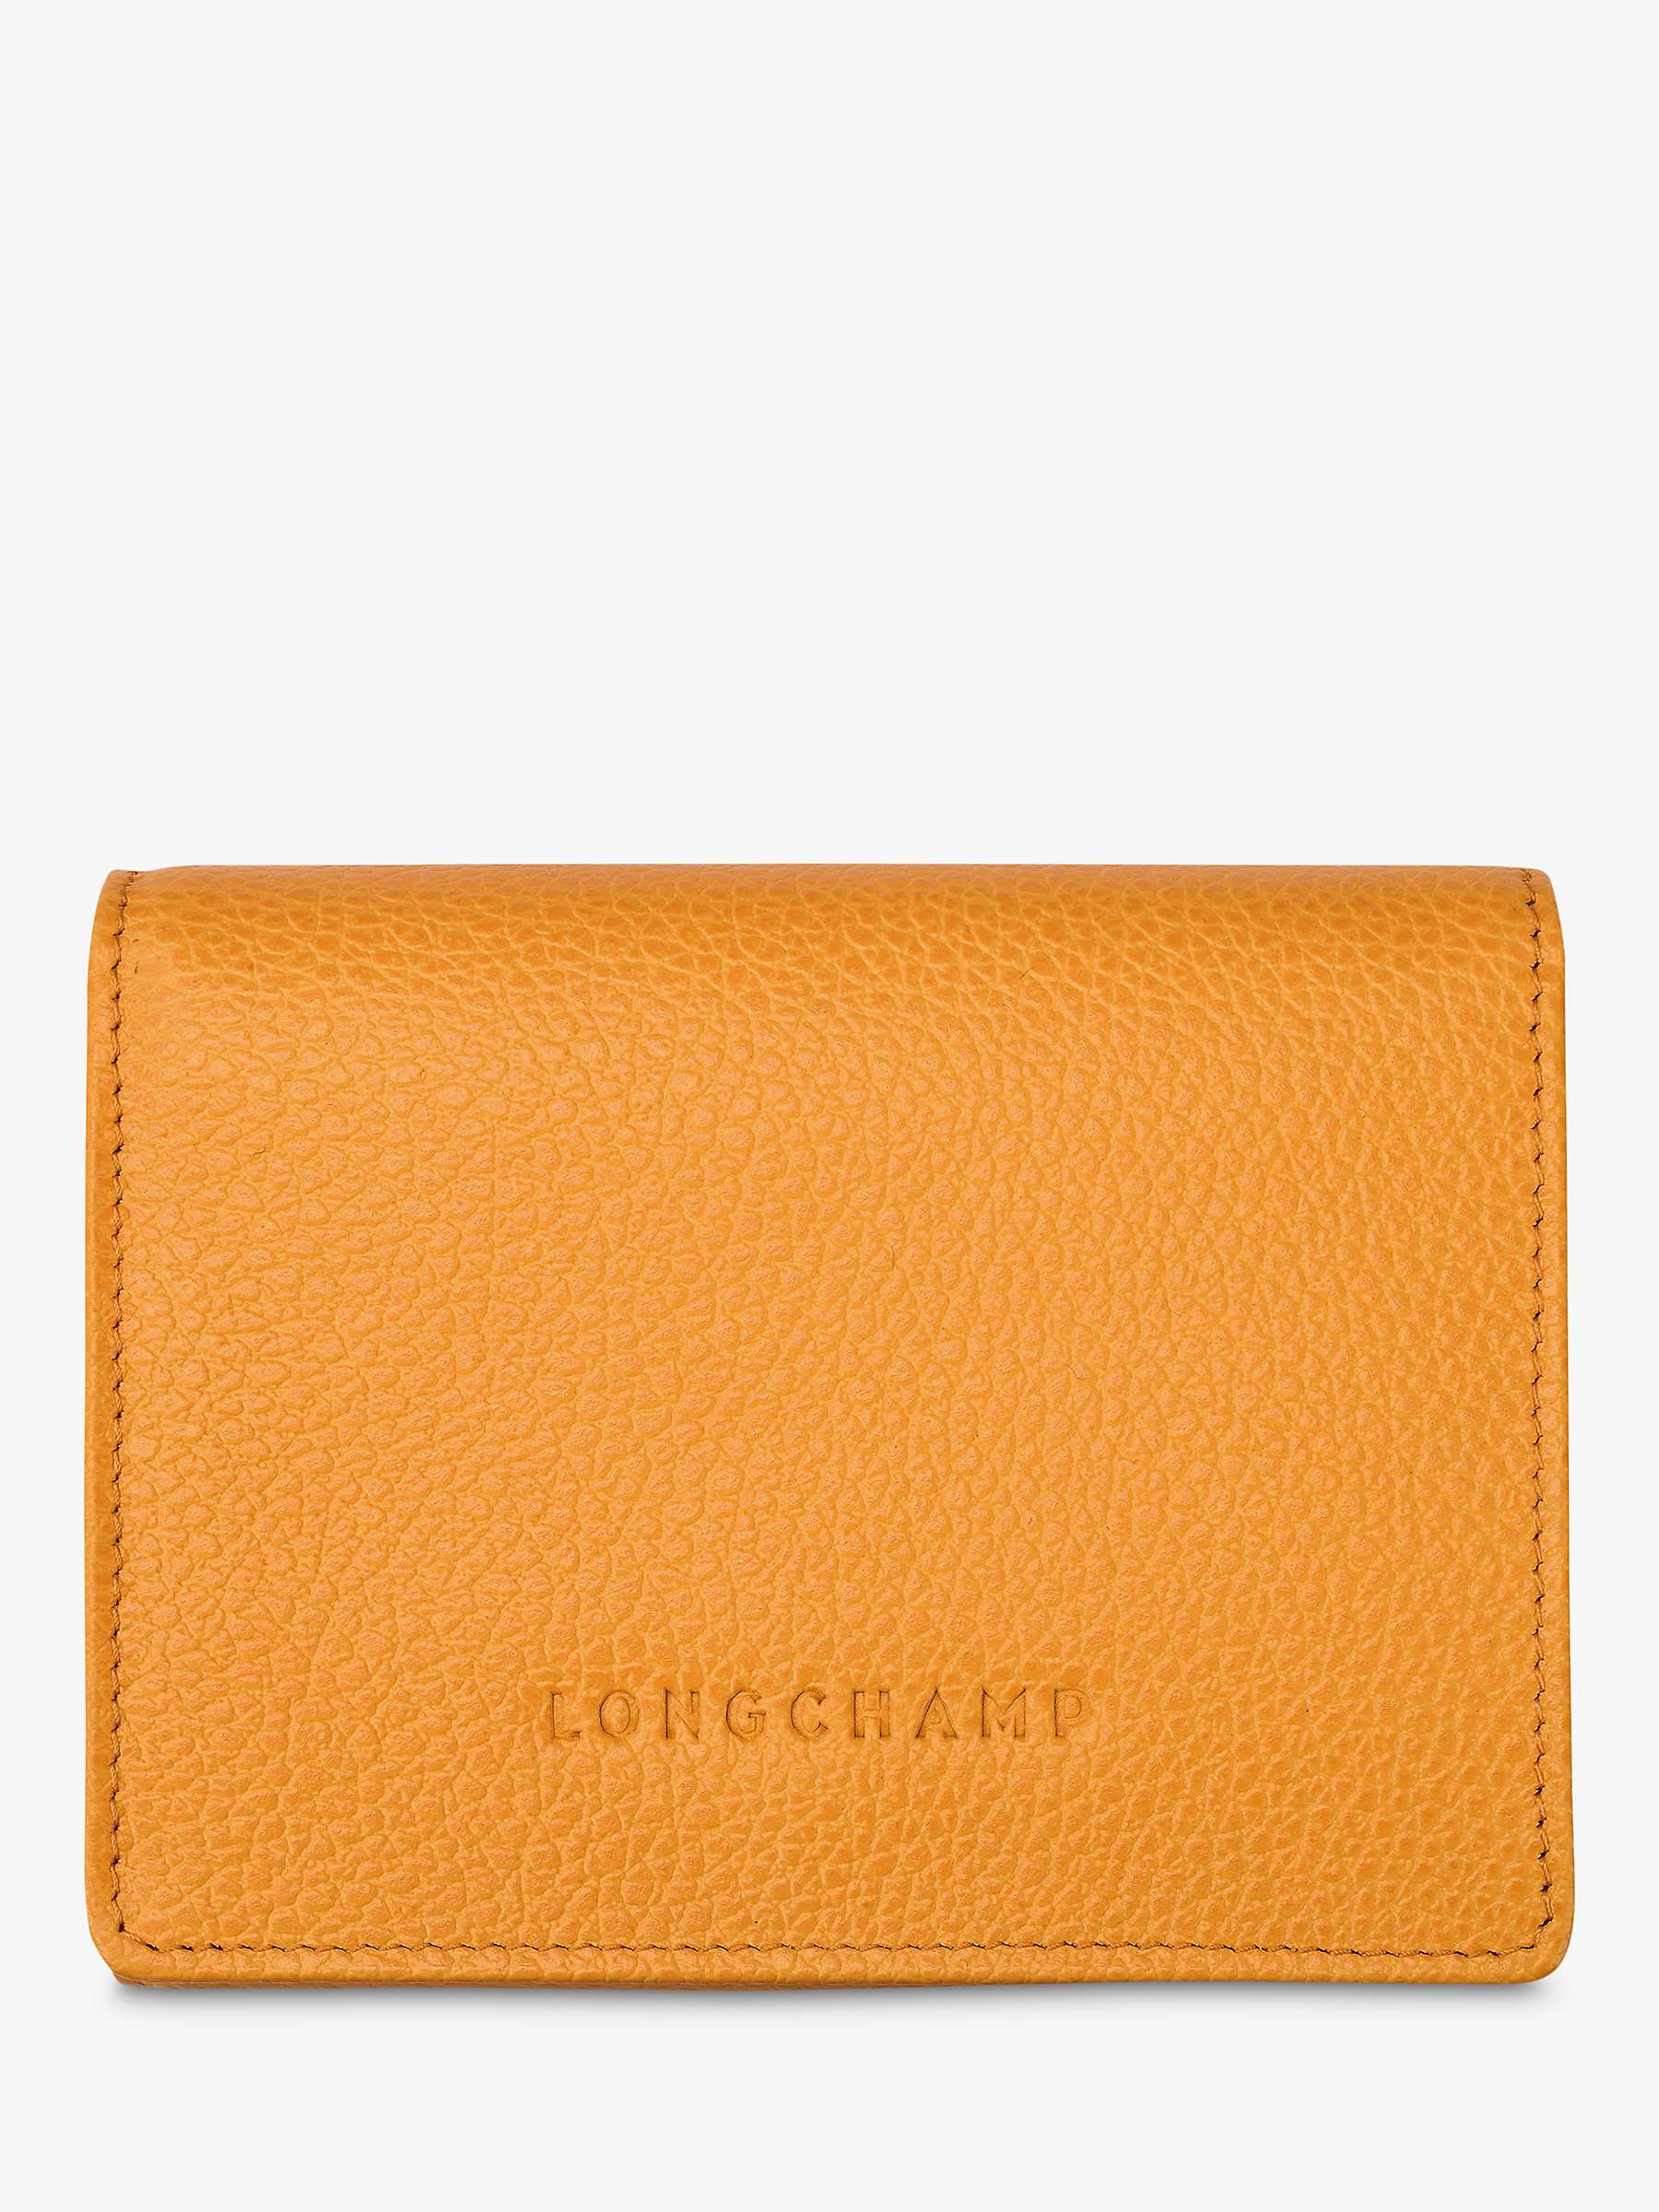 Buy Longchamp Le Foulonné Compact Leather Wallet Online at johnlewis.com